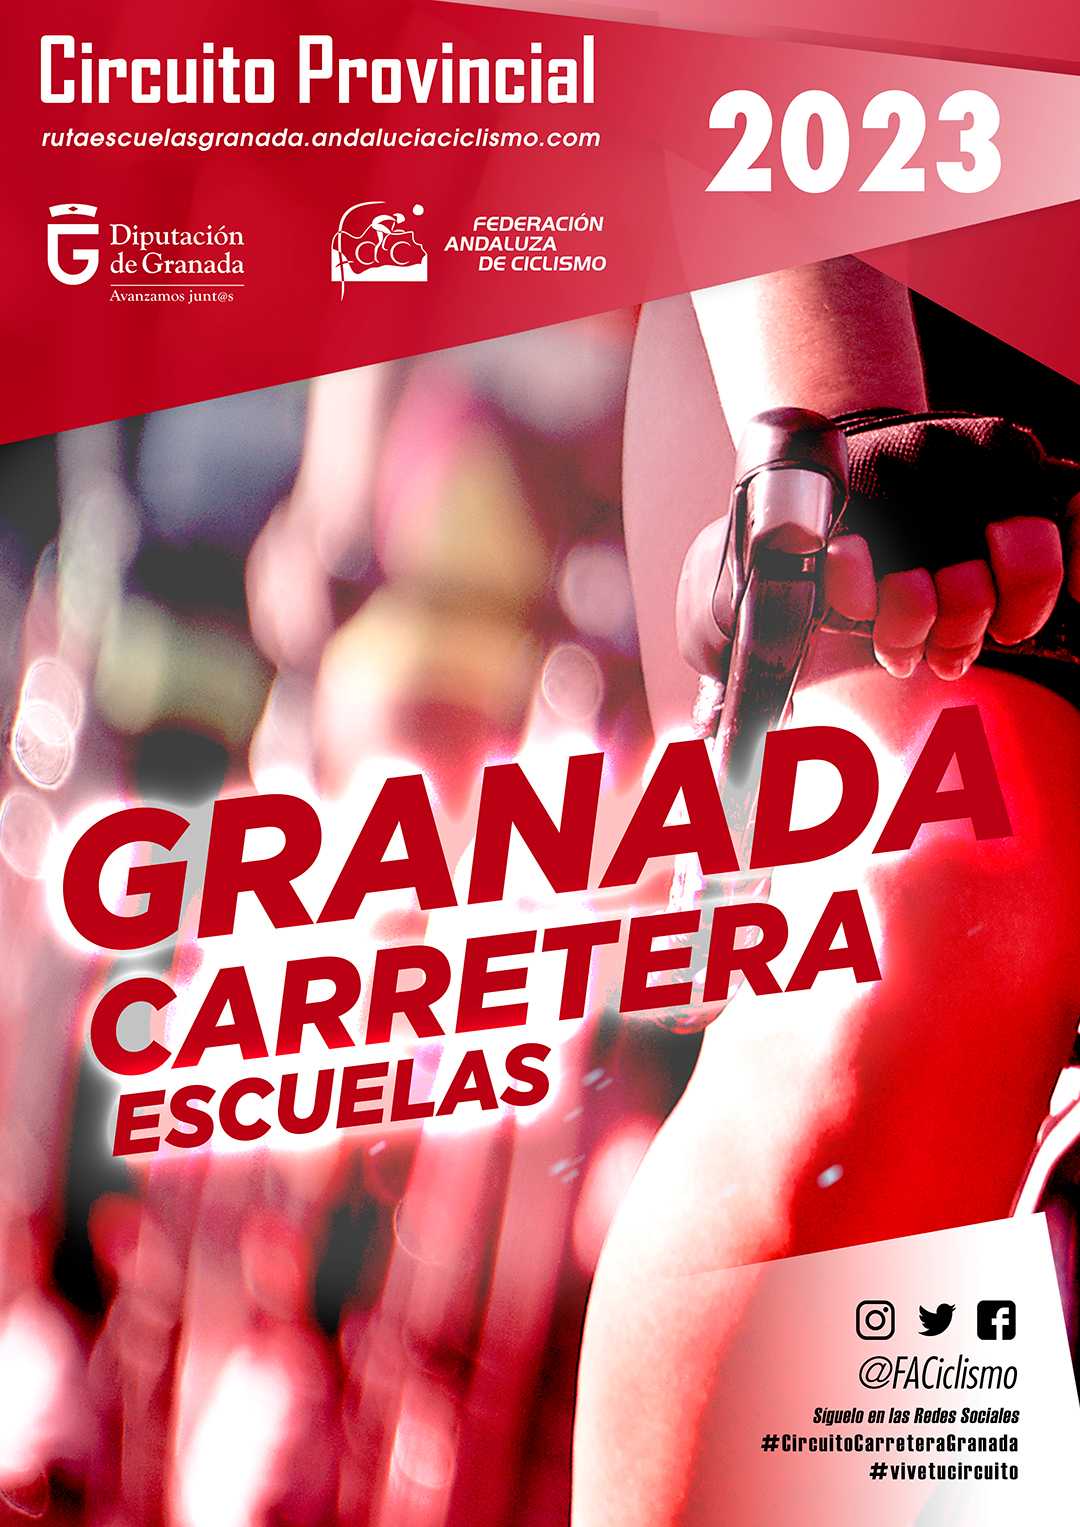 Fechas del Circuito Provincial de Granada Carretera Escuelas 2023